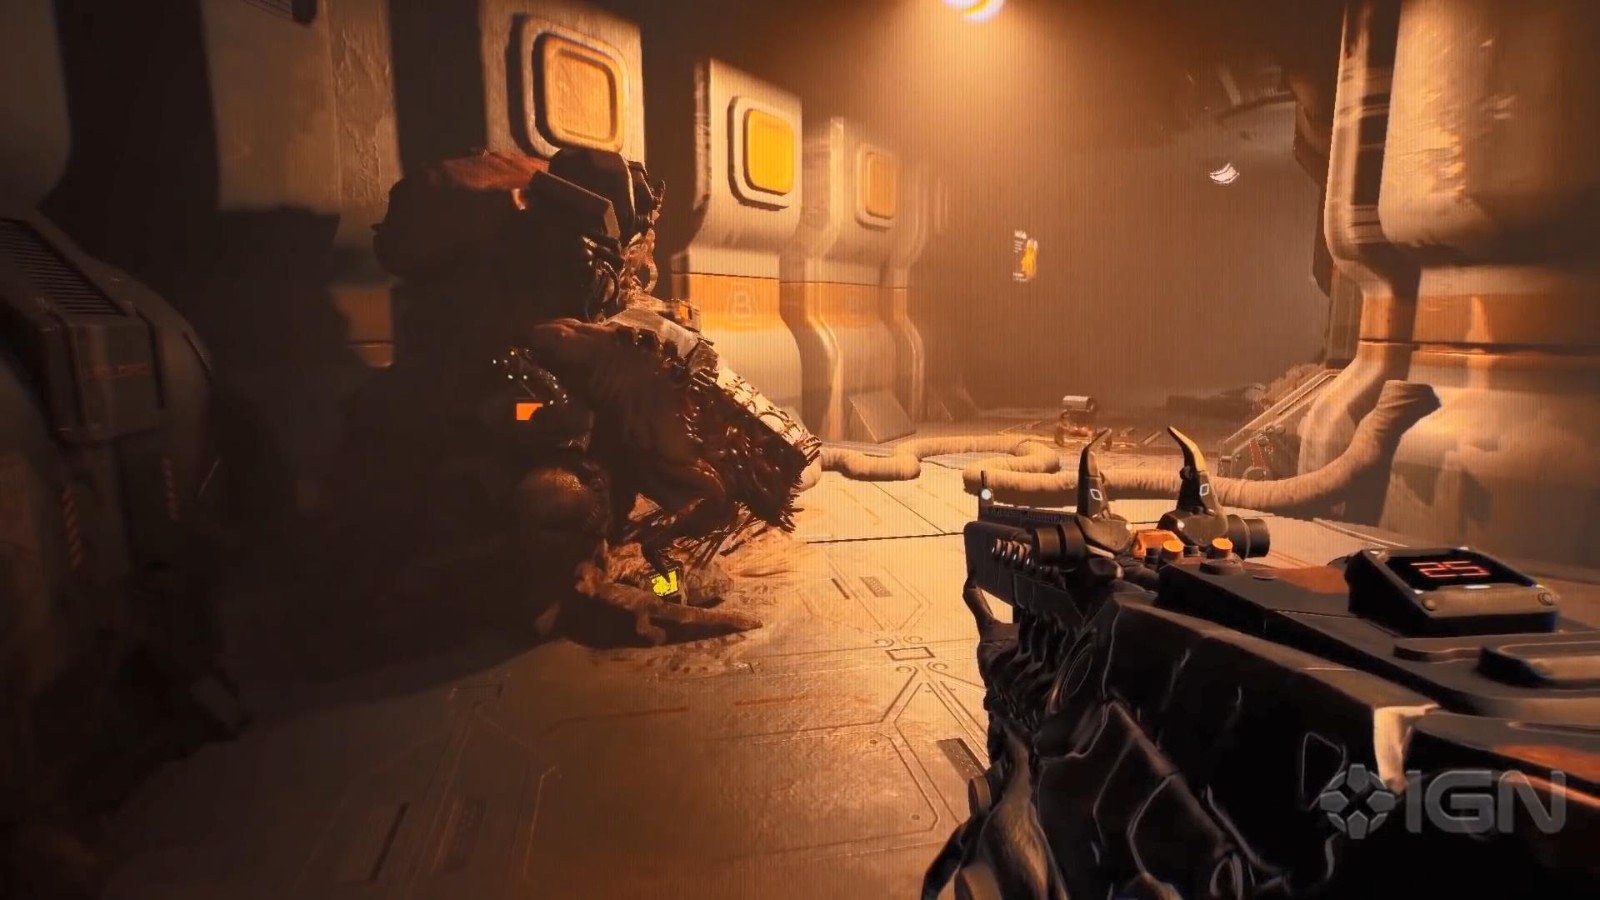 合作恐怖射击游戏《Ripout》新演示 将登陆PS5和XSX